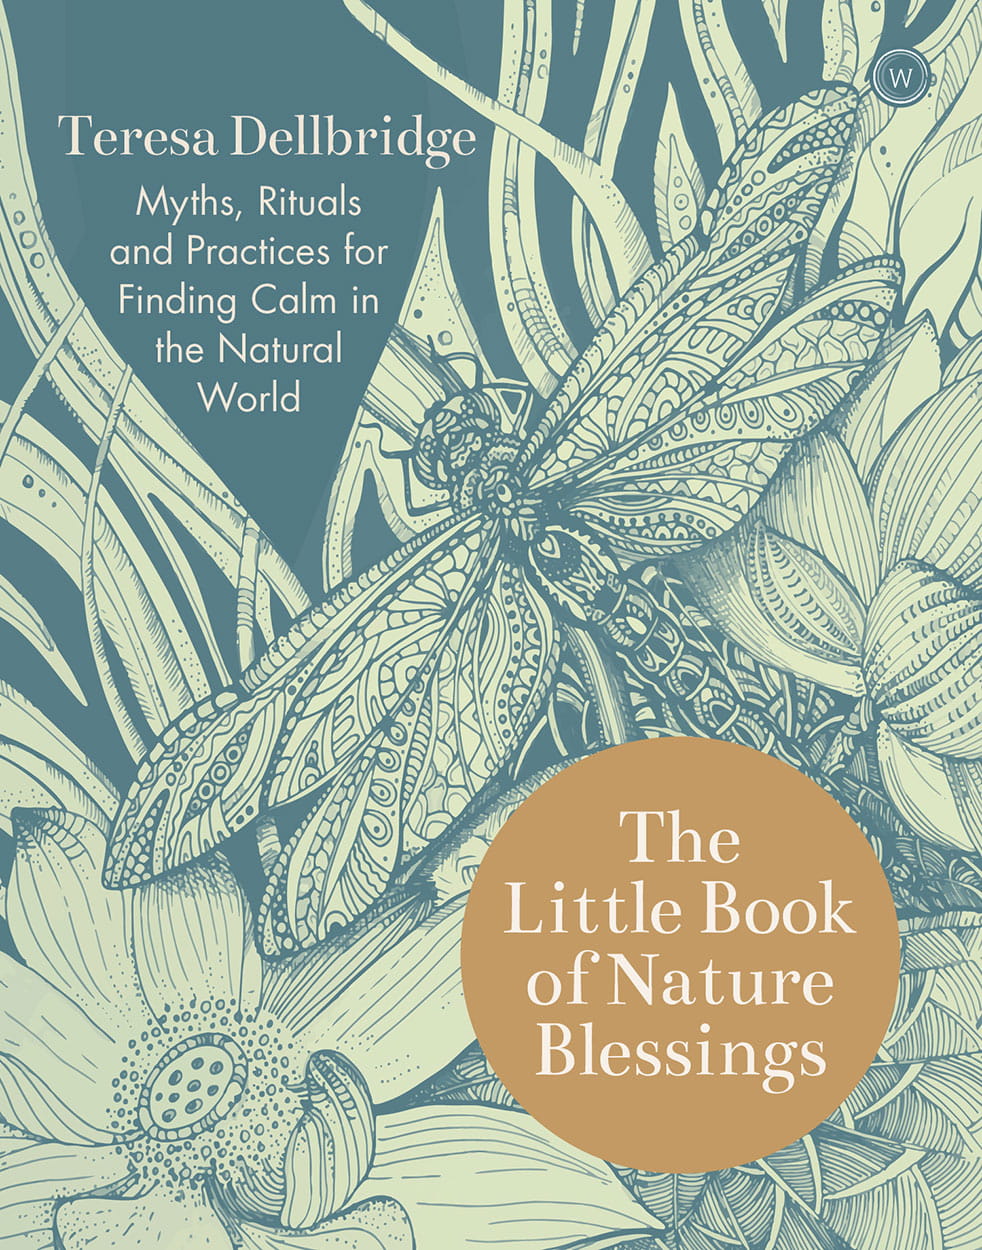 Teresa Dellbridge's The Little Book of Nature Blessings